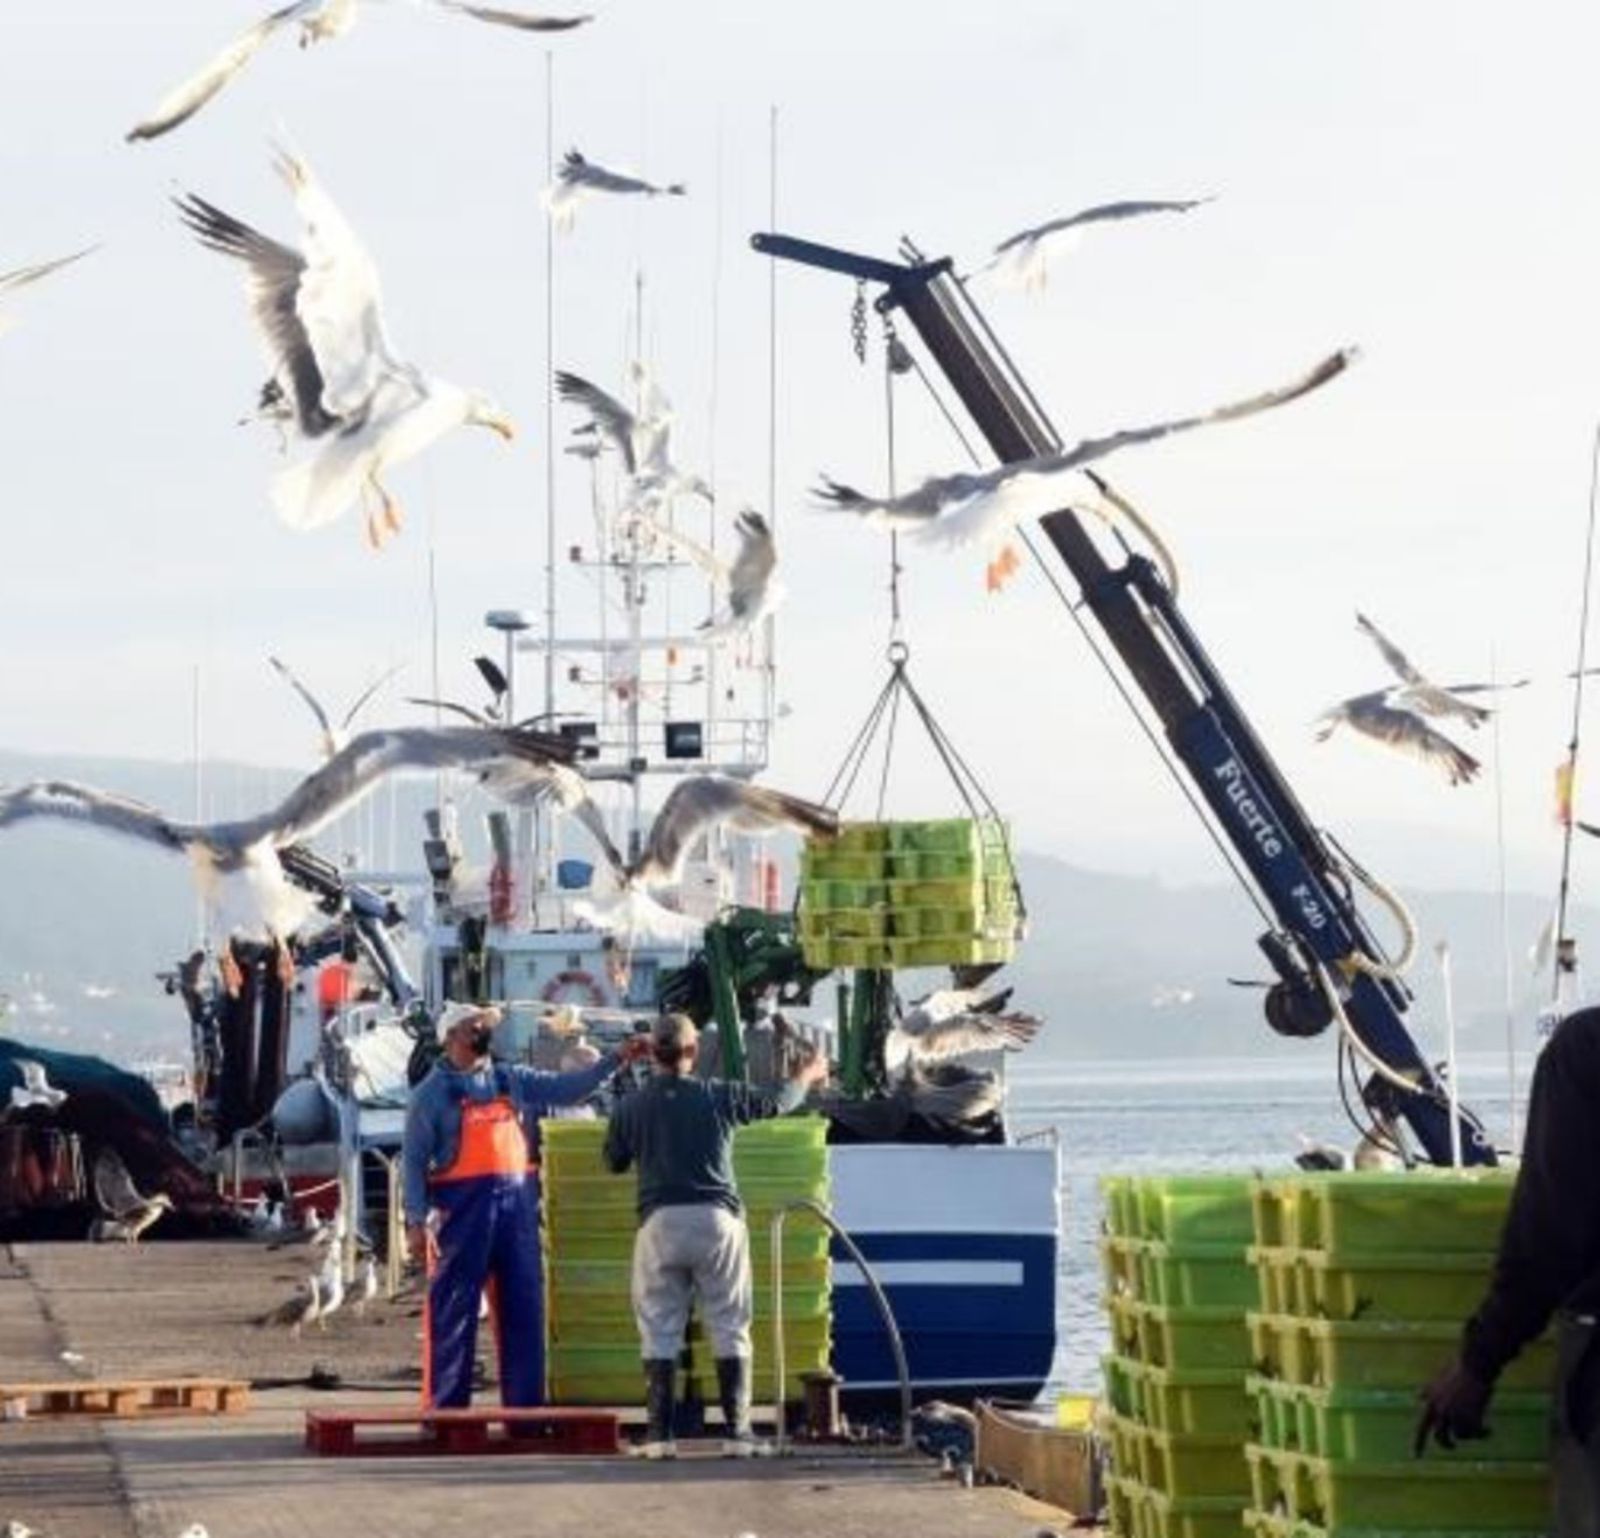 Trabajos de descarga en un puerto pesquero gallego